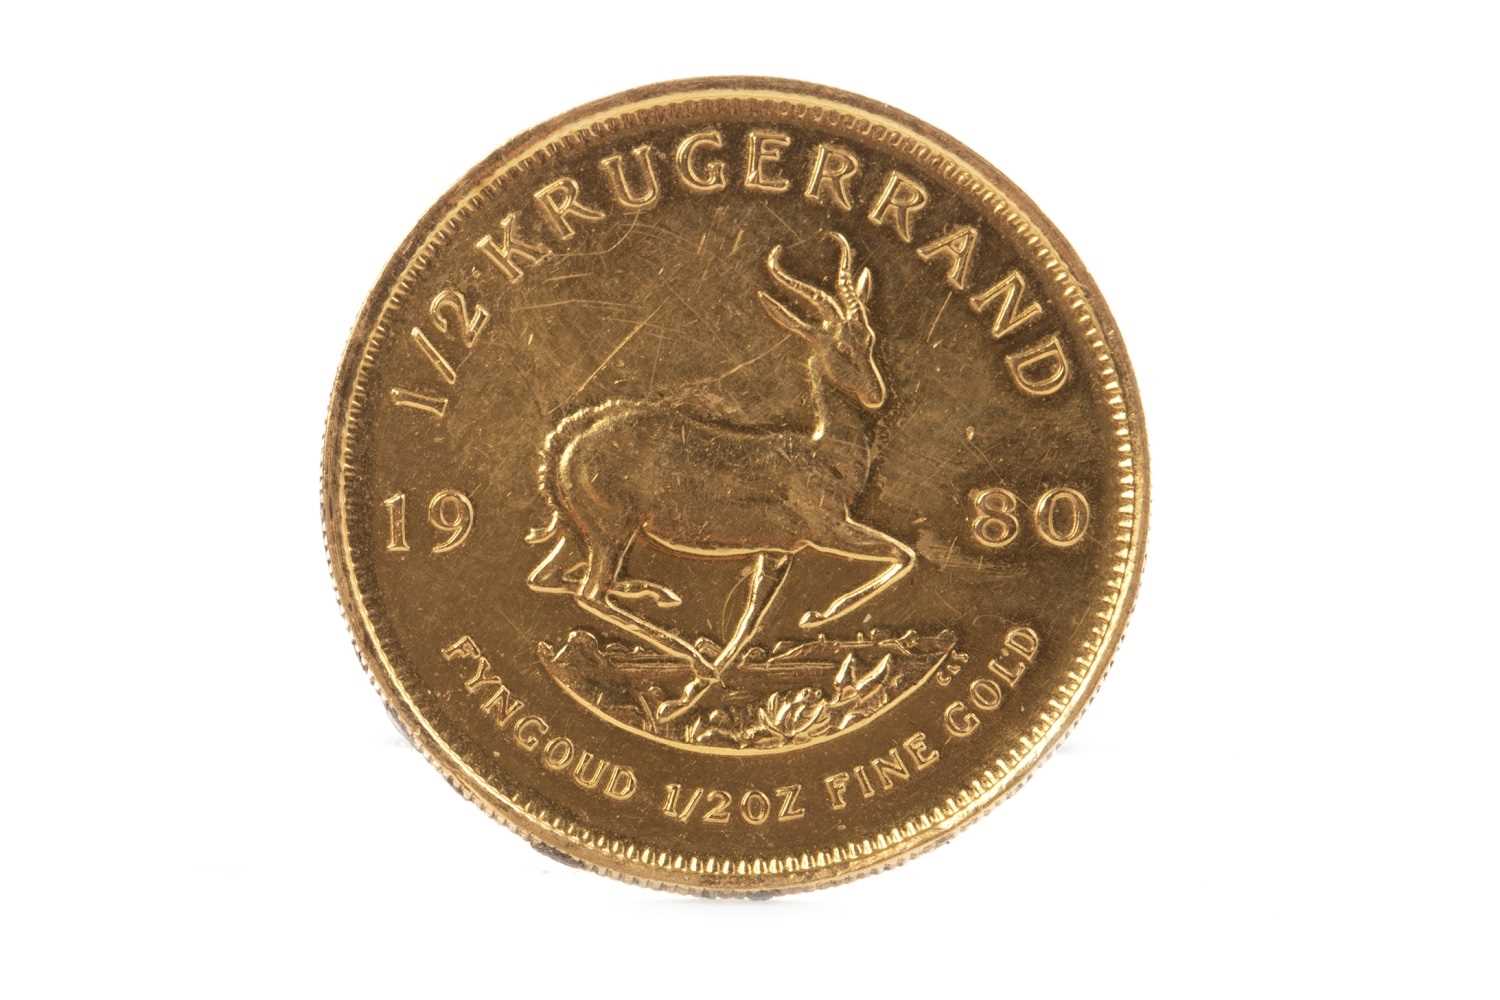 Lot 567 - A GOLD HALF KRUGERRAND COIN, 1980